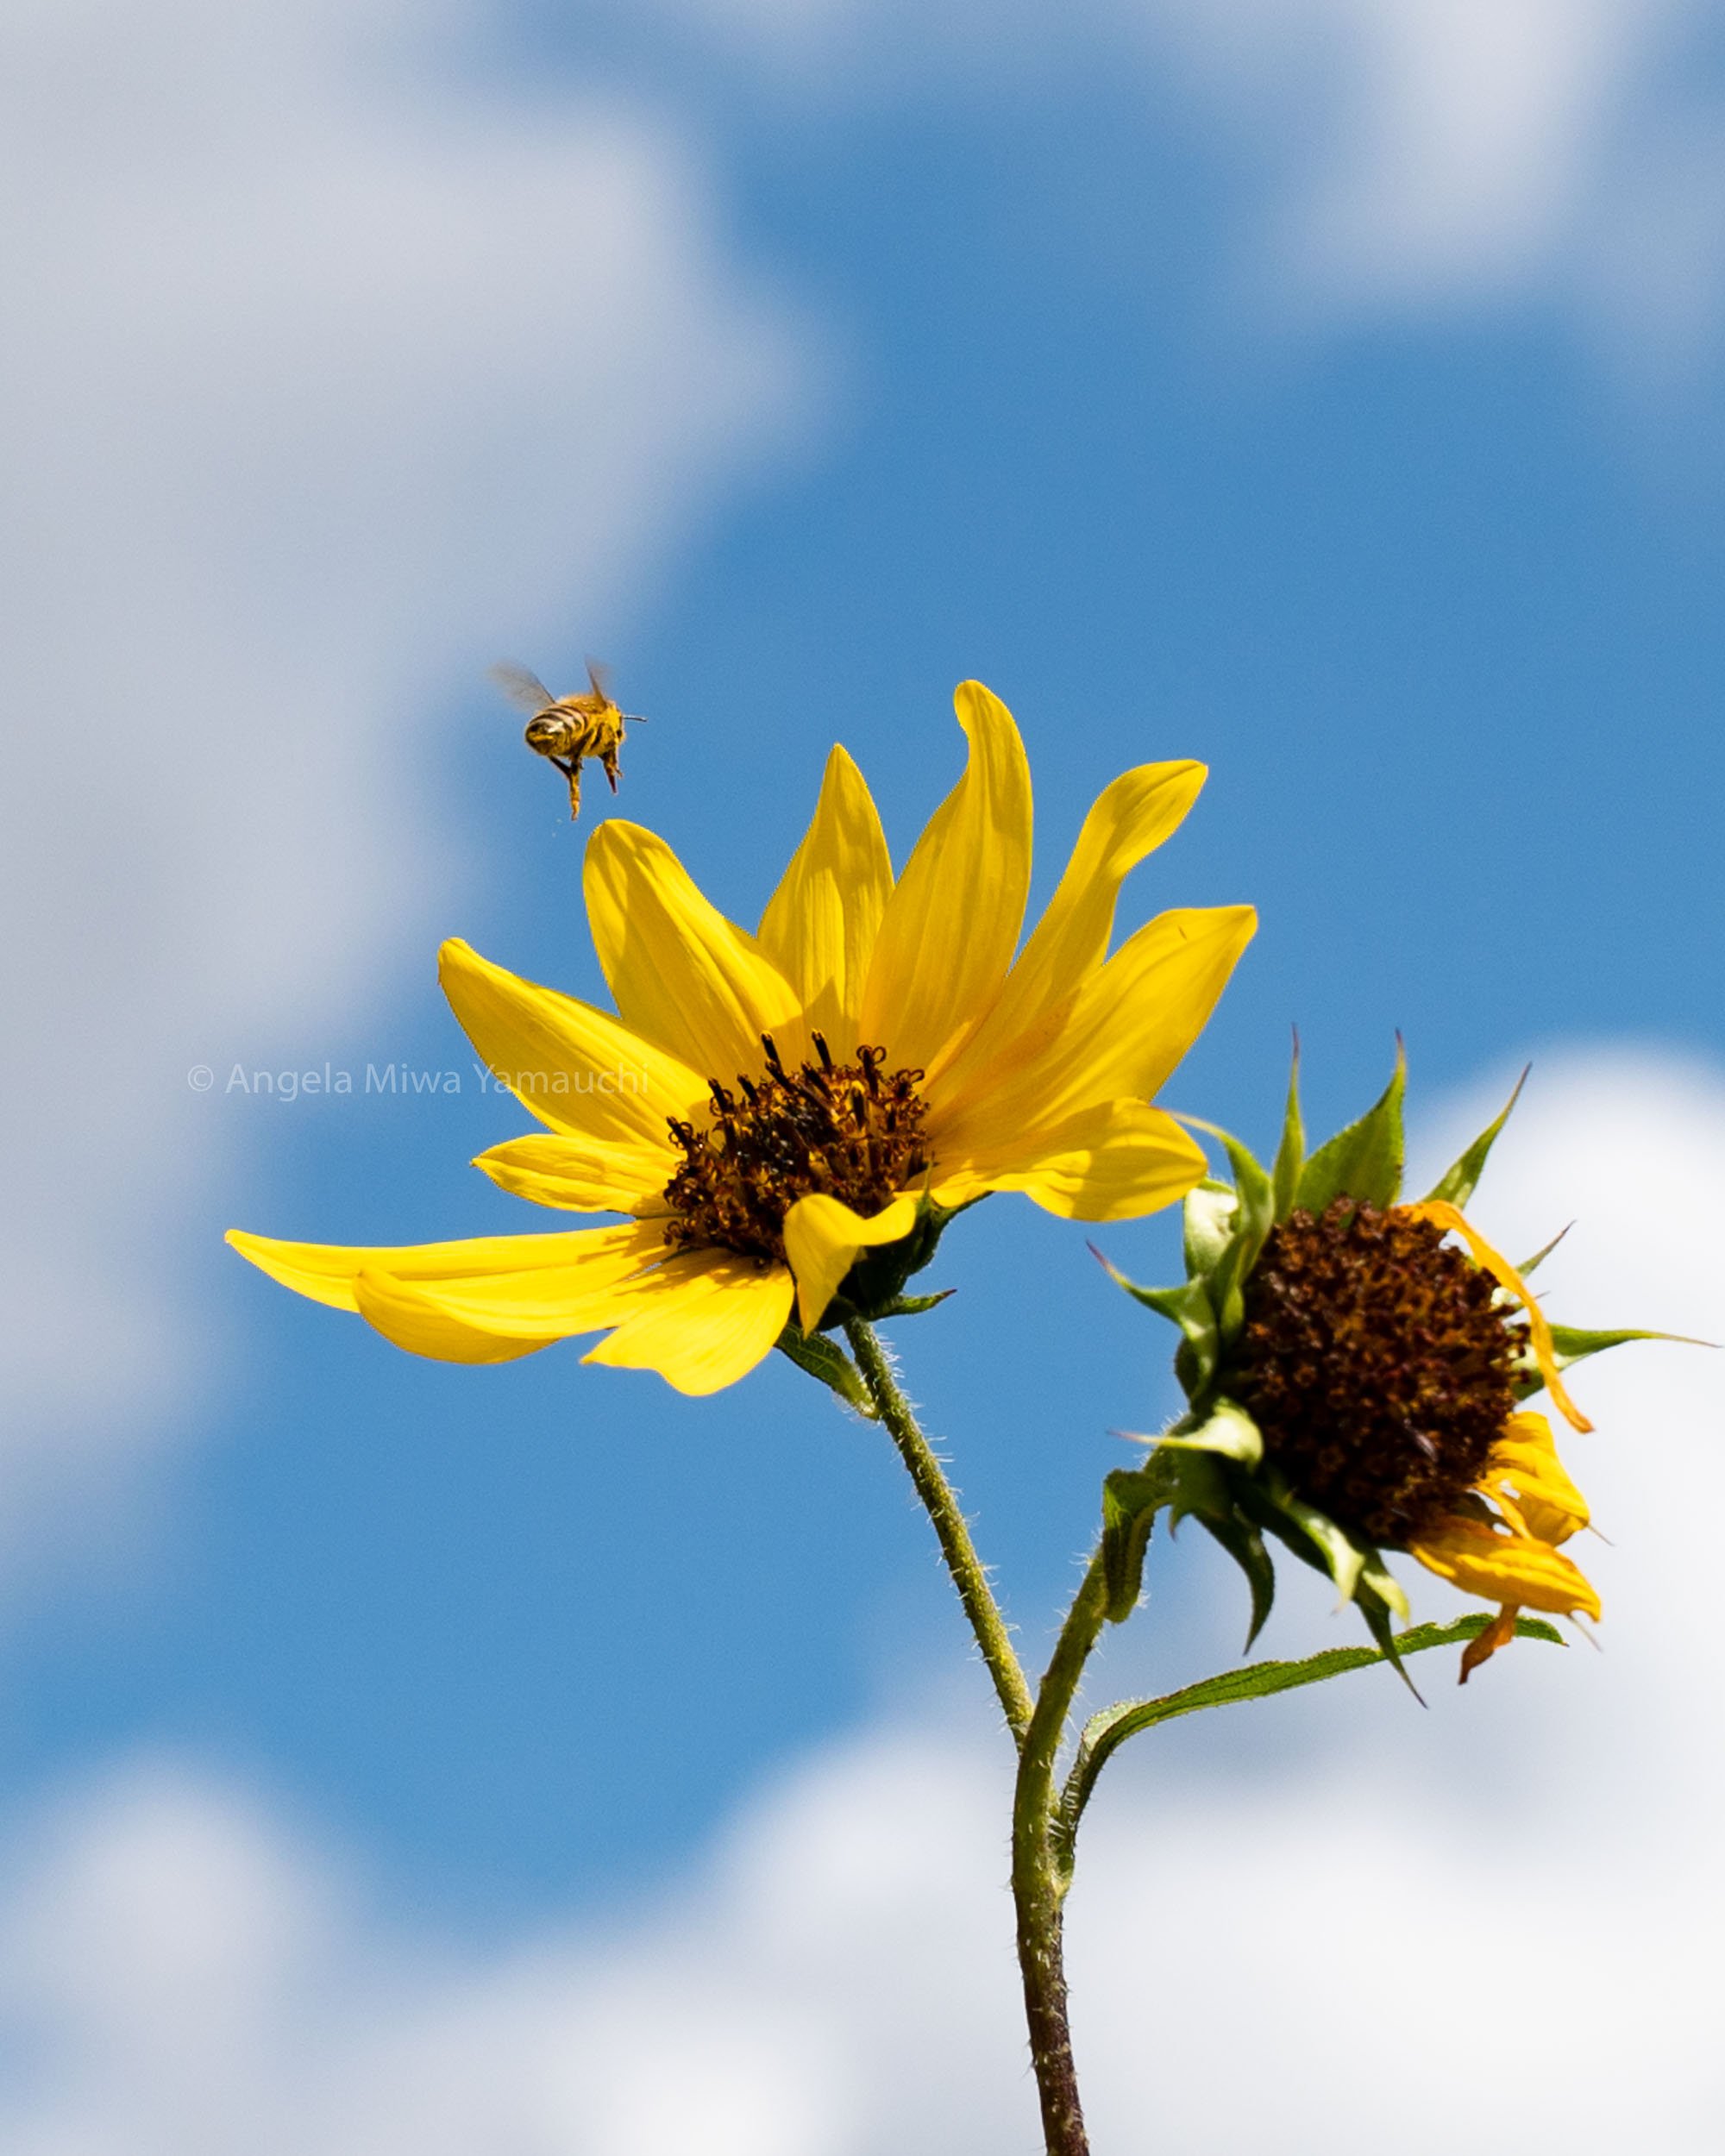 Honeybee Over Sunflower